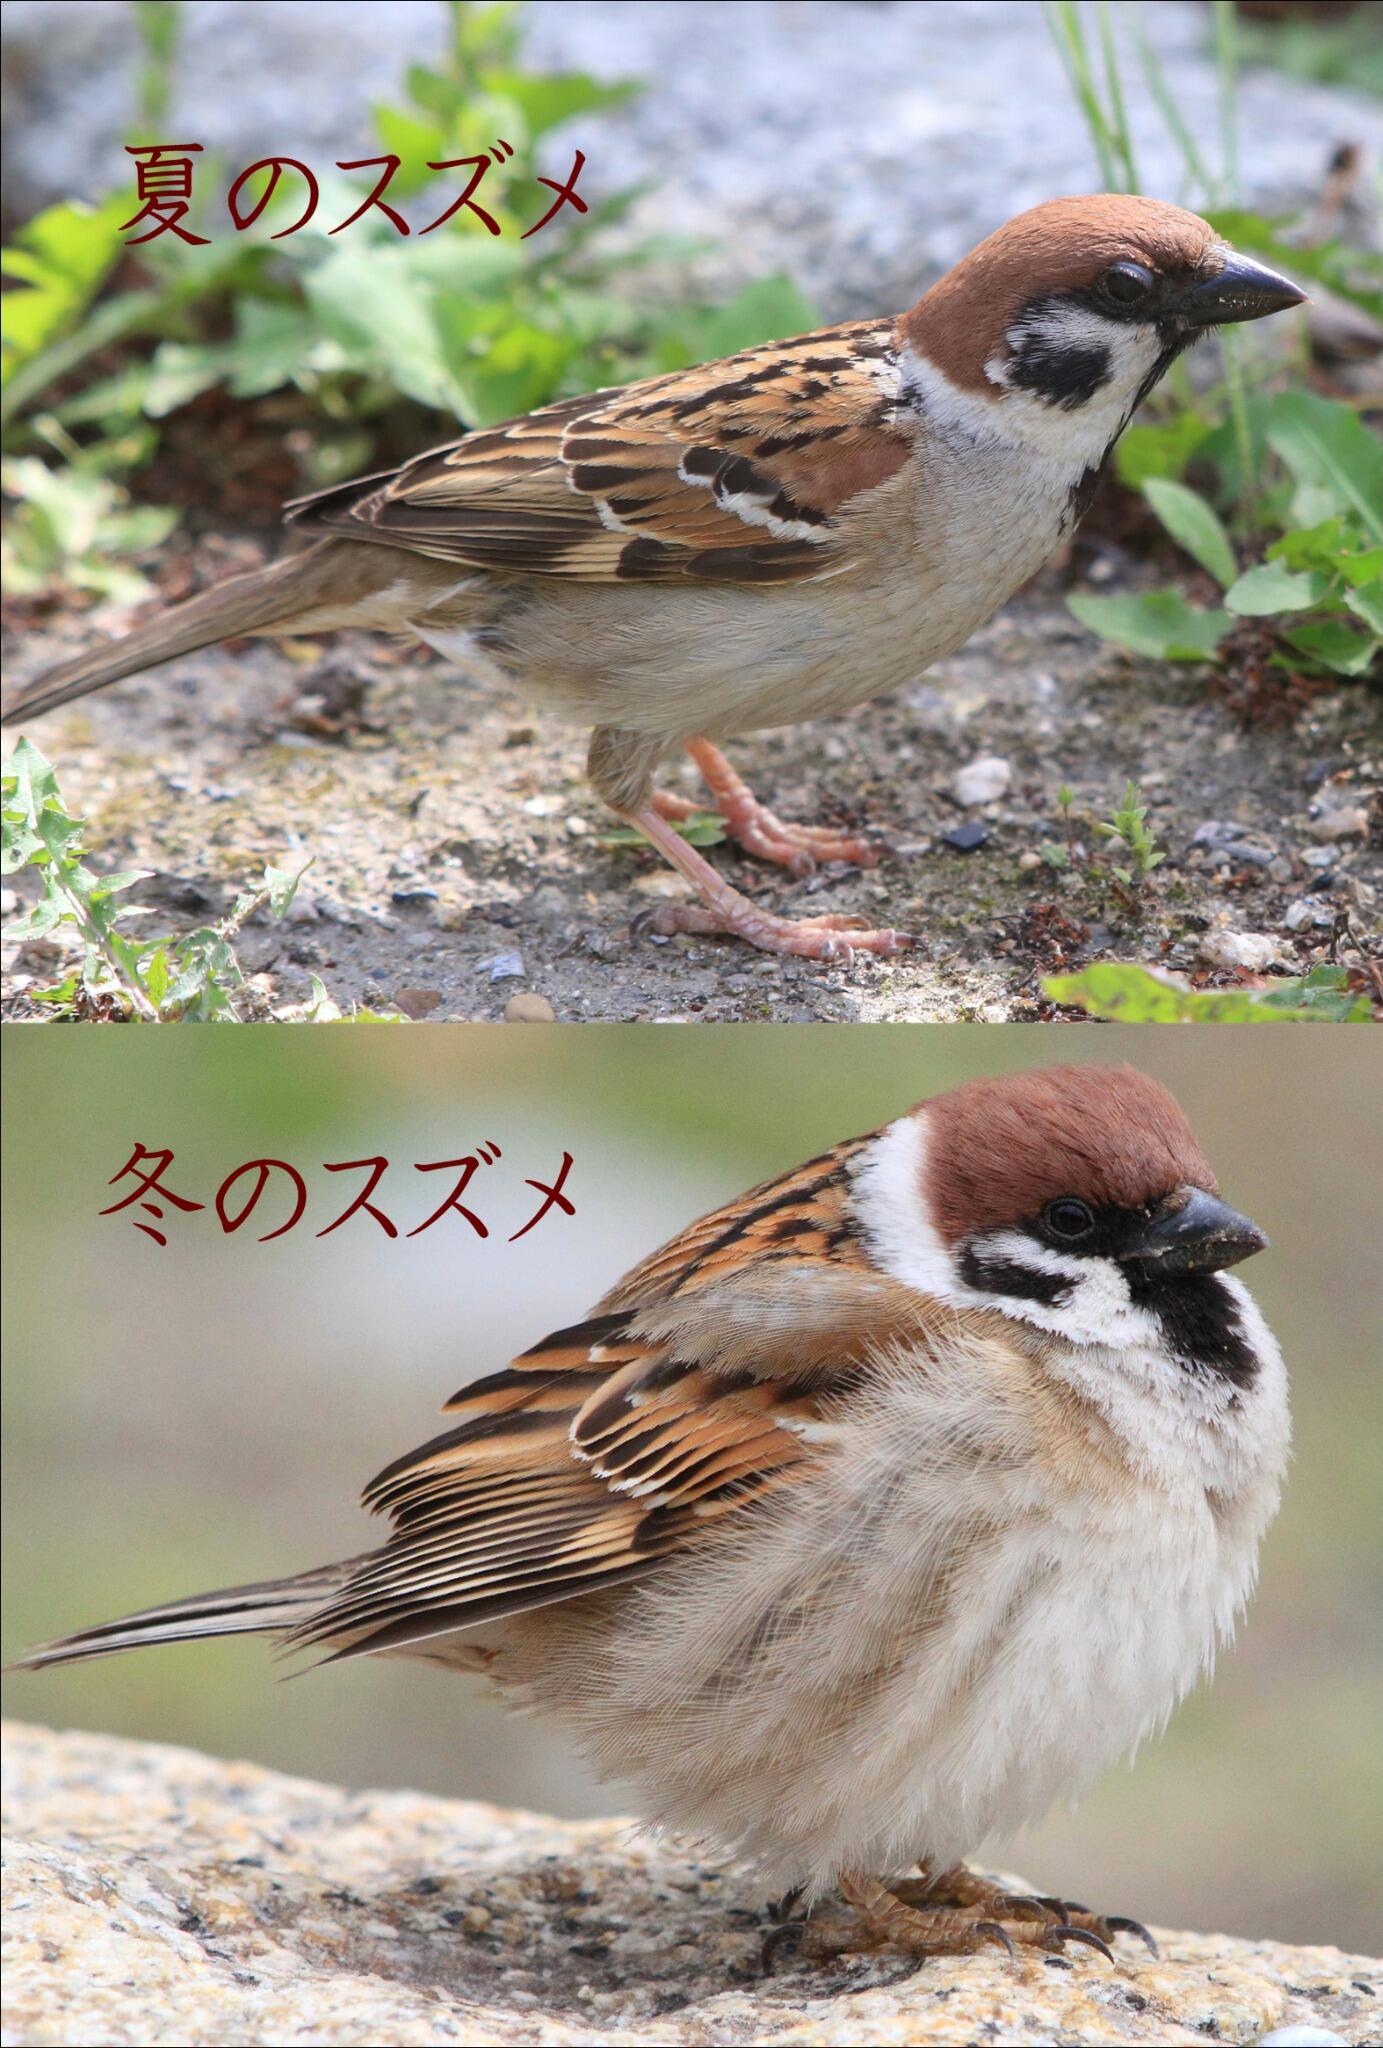 片柳弘史 夏のスズメと冬のスズメの写真を並べてみました 同じ鳥が 季節によってこれほどまでに姿を変えるとは まるで別人 別鳥 のようです Http T Co Ialahnixmi Twitter